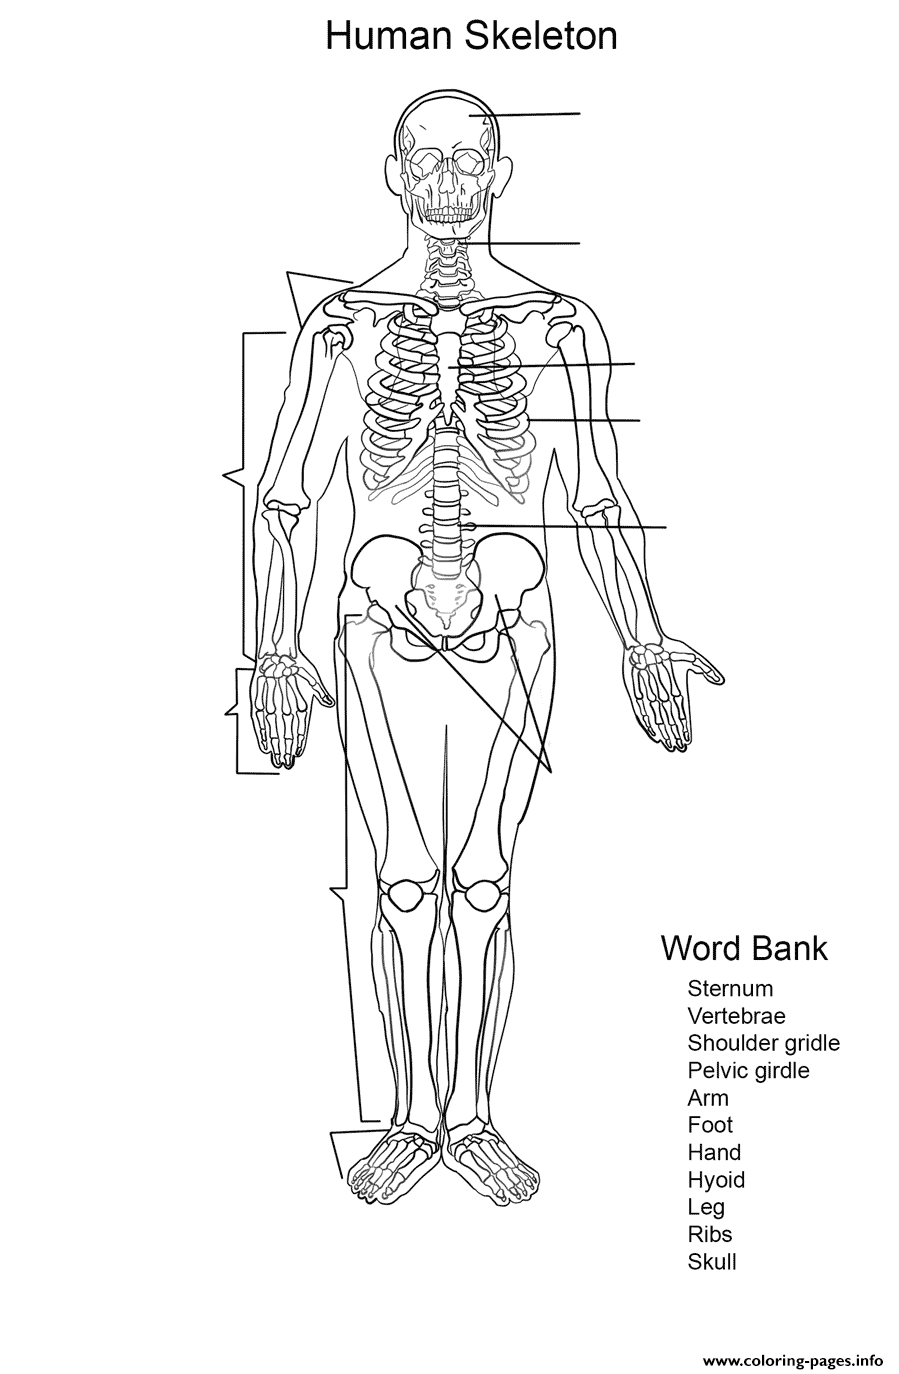 Human Skeleton Worksheet coloring